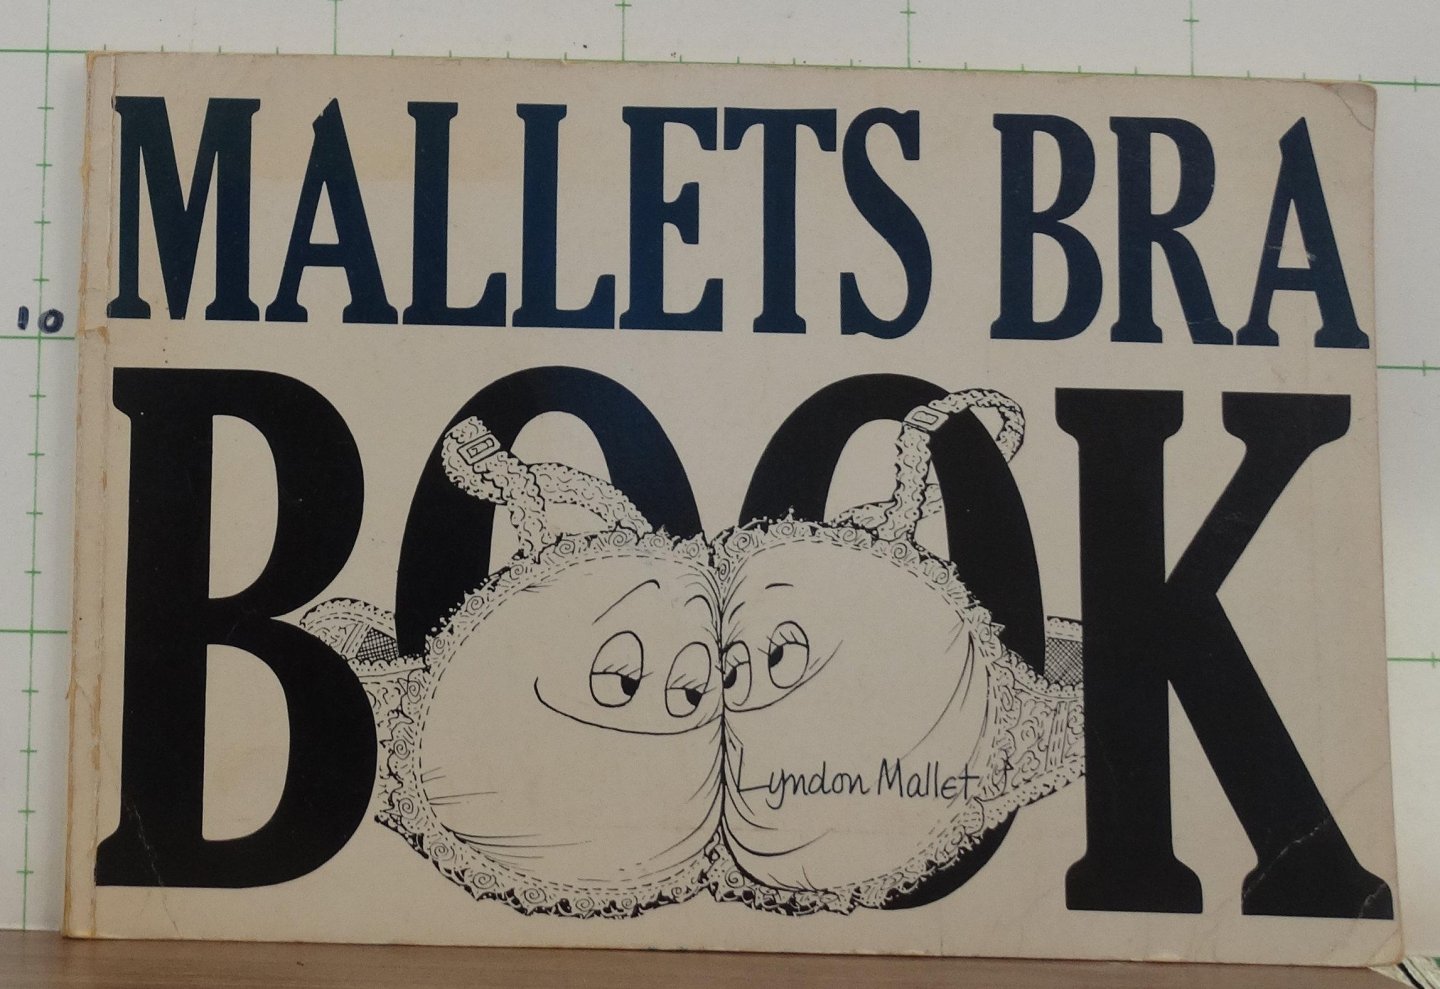 Mallet, L. - Mallet's bra book